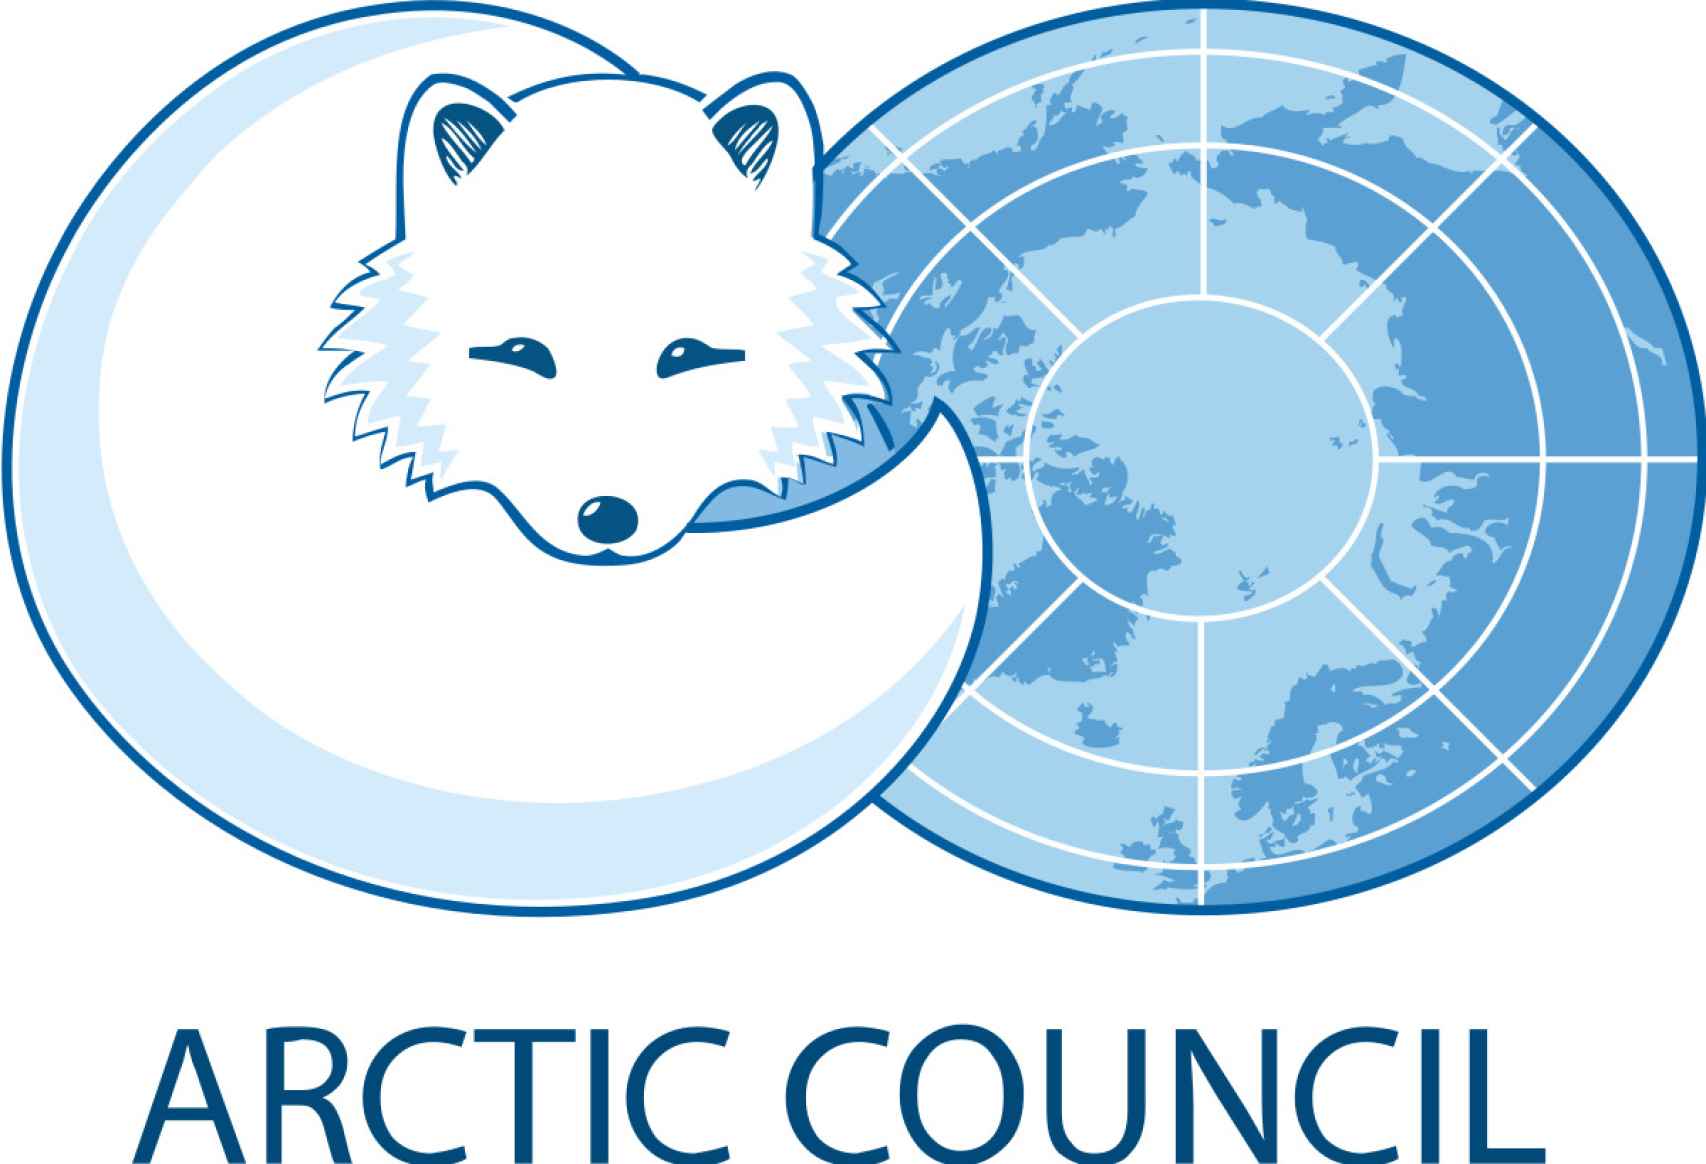 Logo del Consejo Ártico.